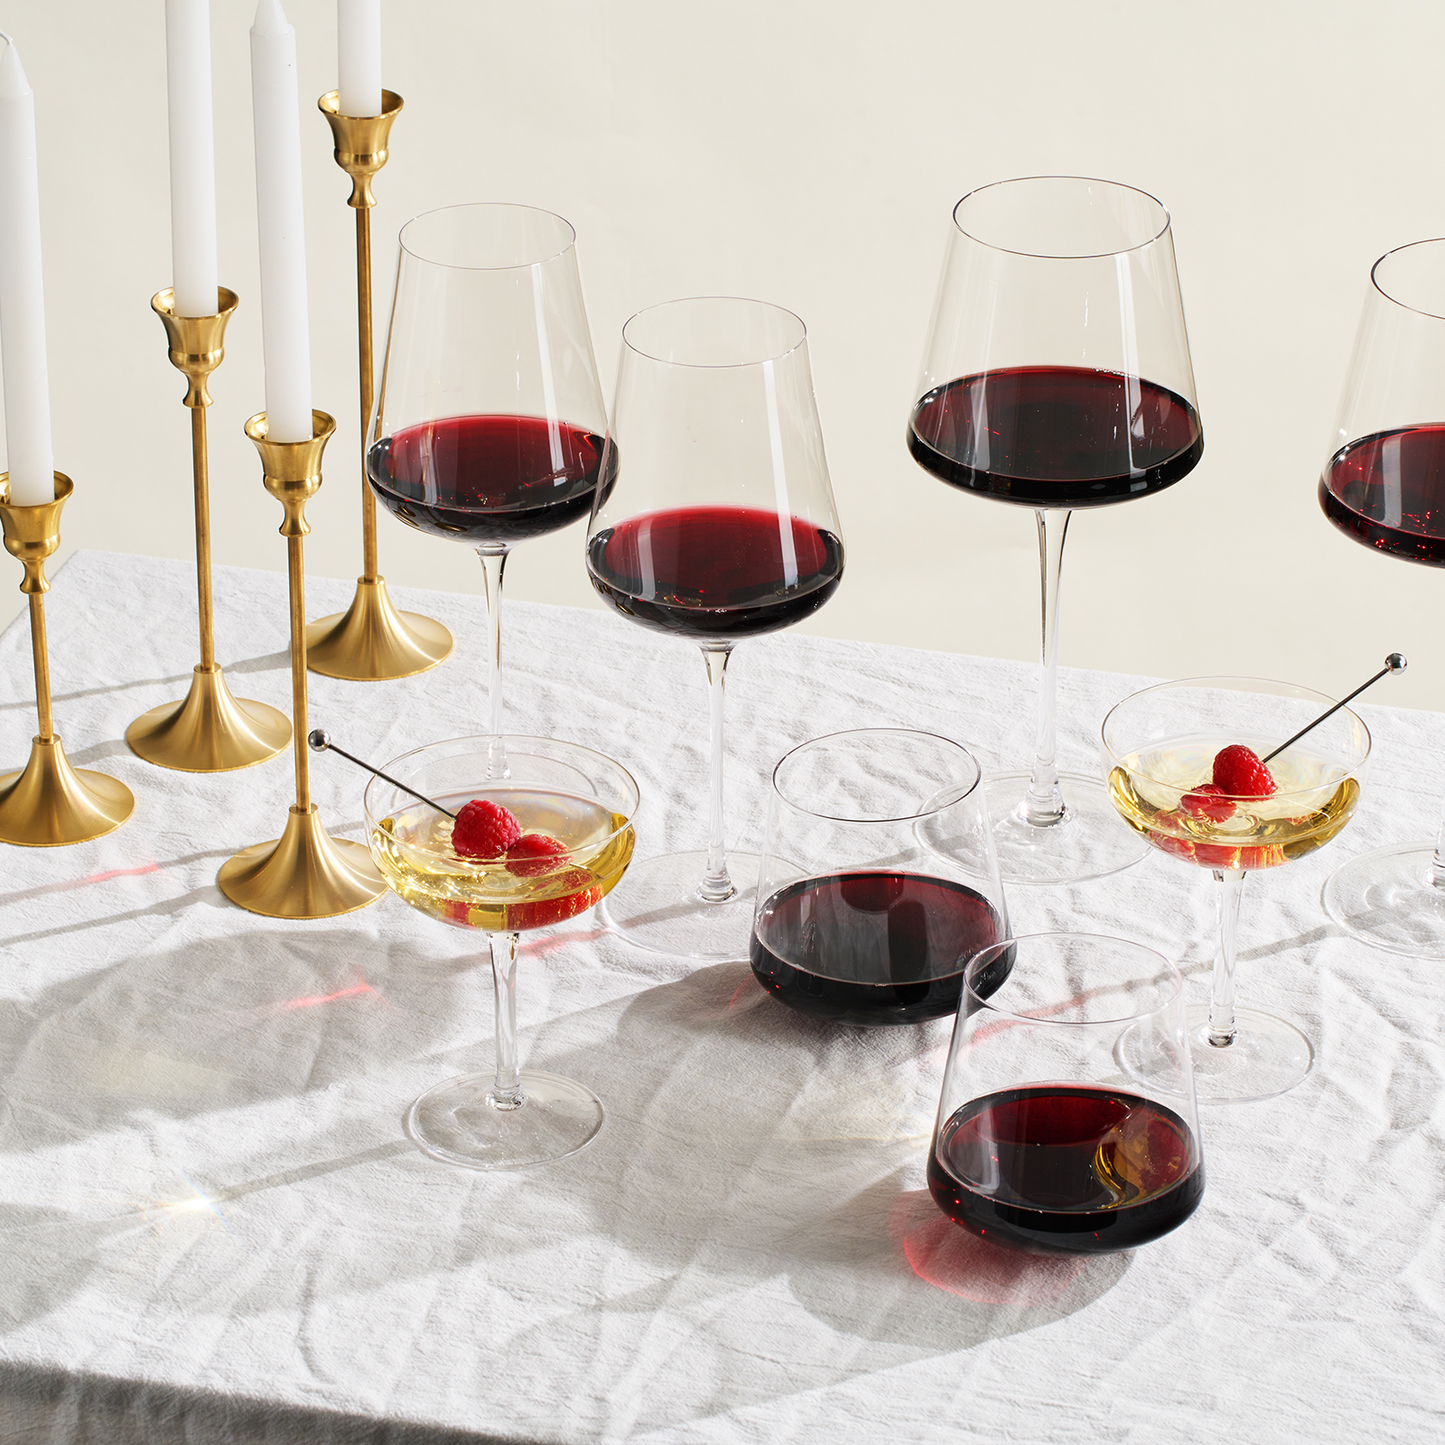 Classica Un-Spillable Wine Glassware, Set of 2